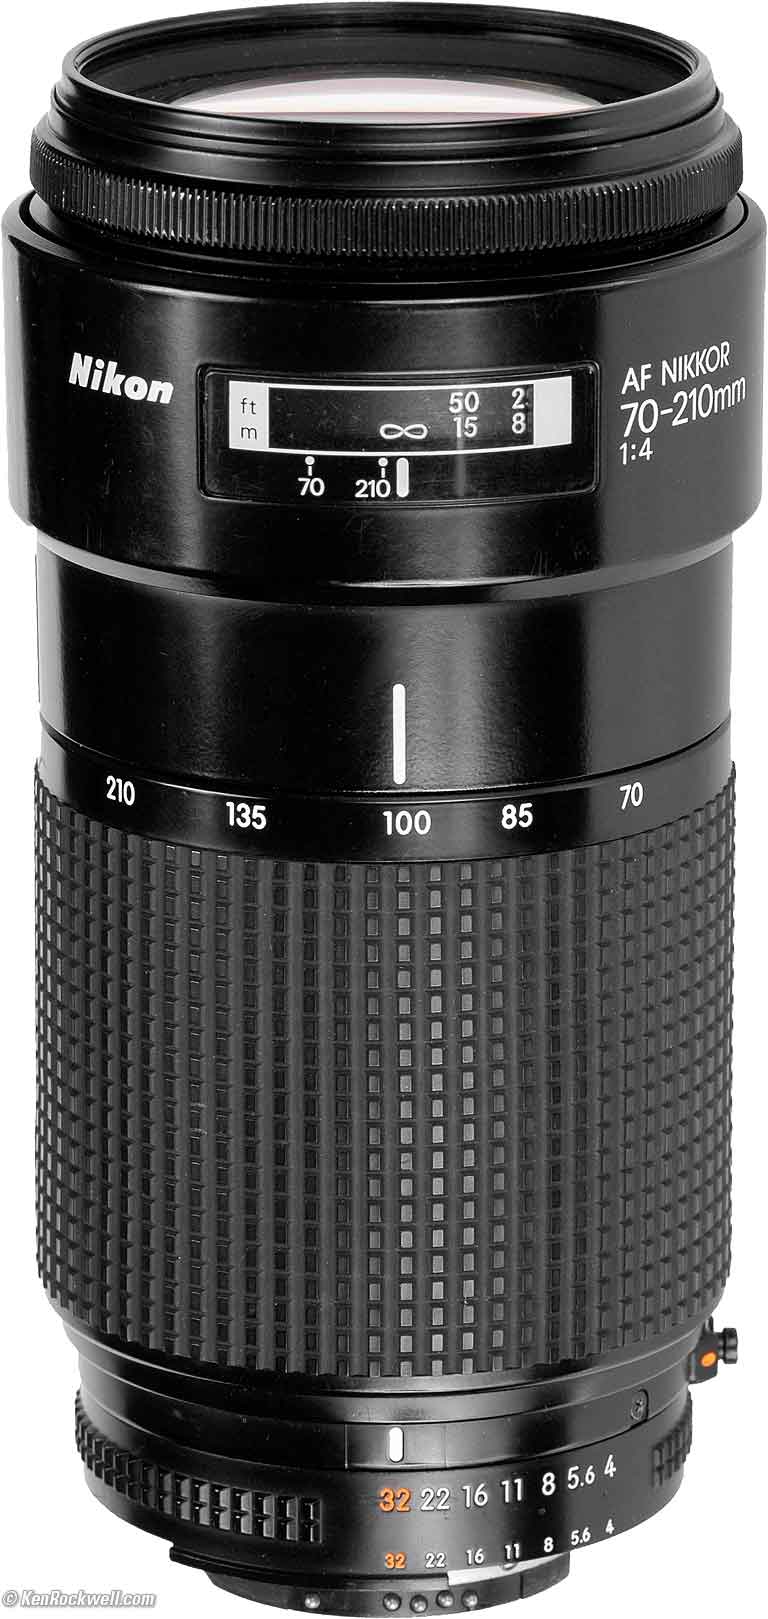 Nikon 70-210mm f/4 Review